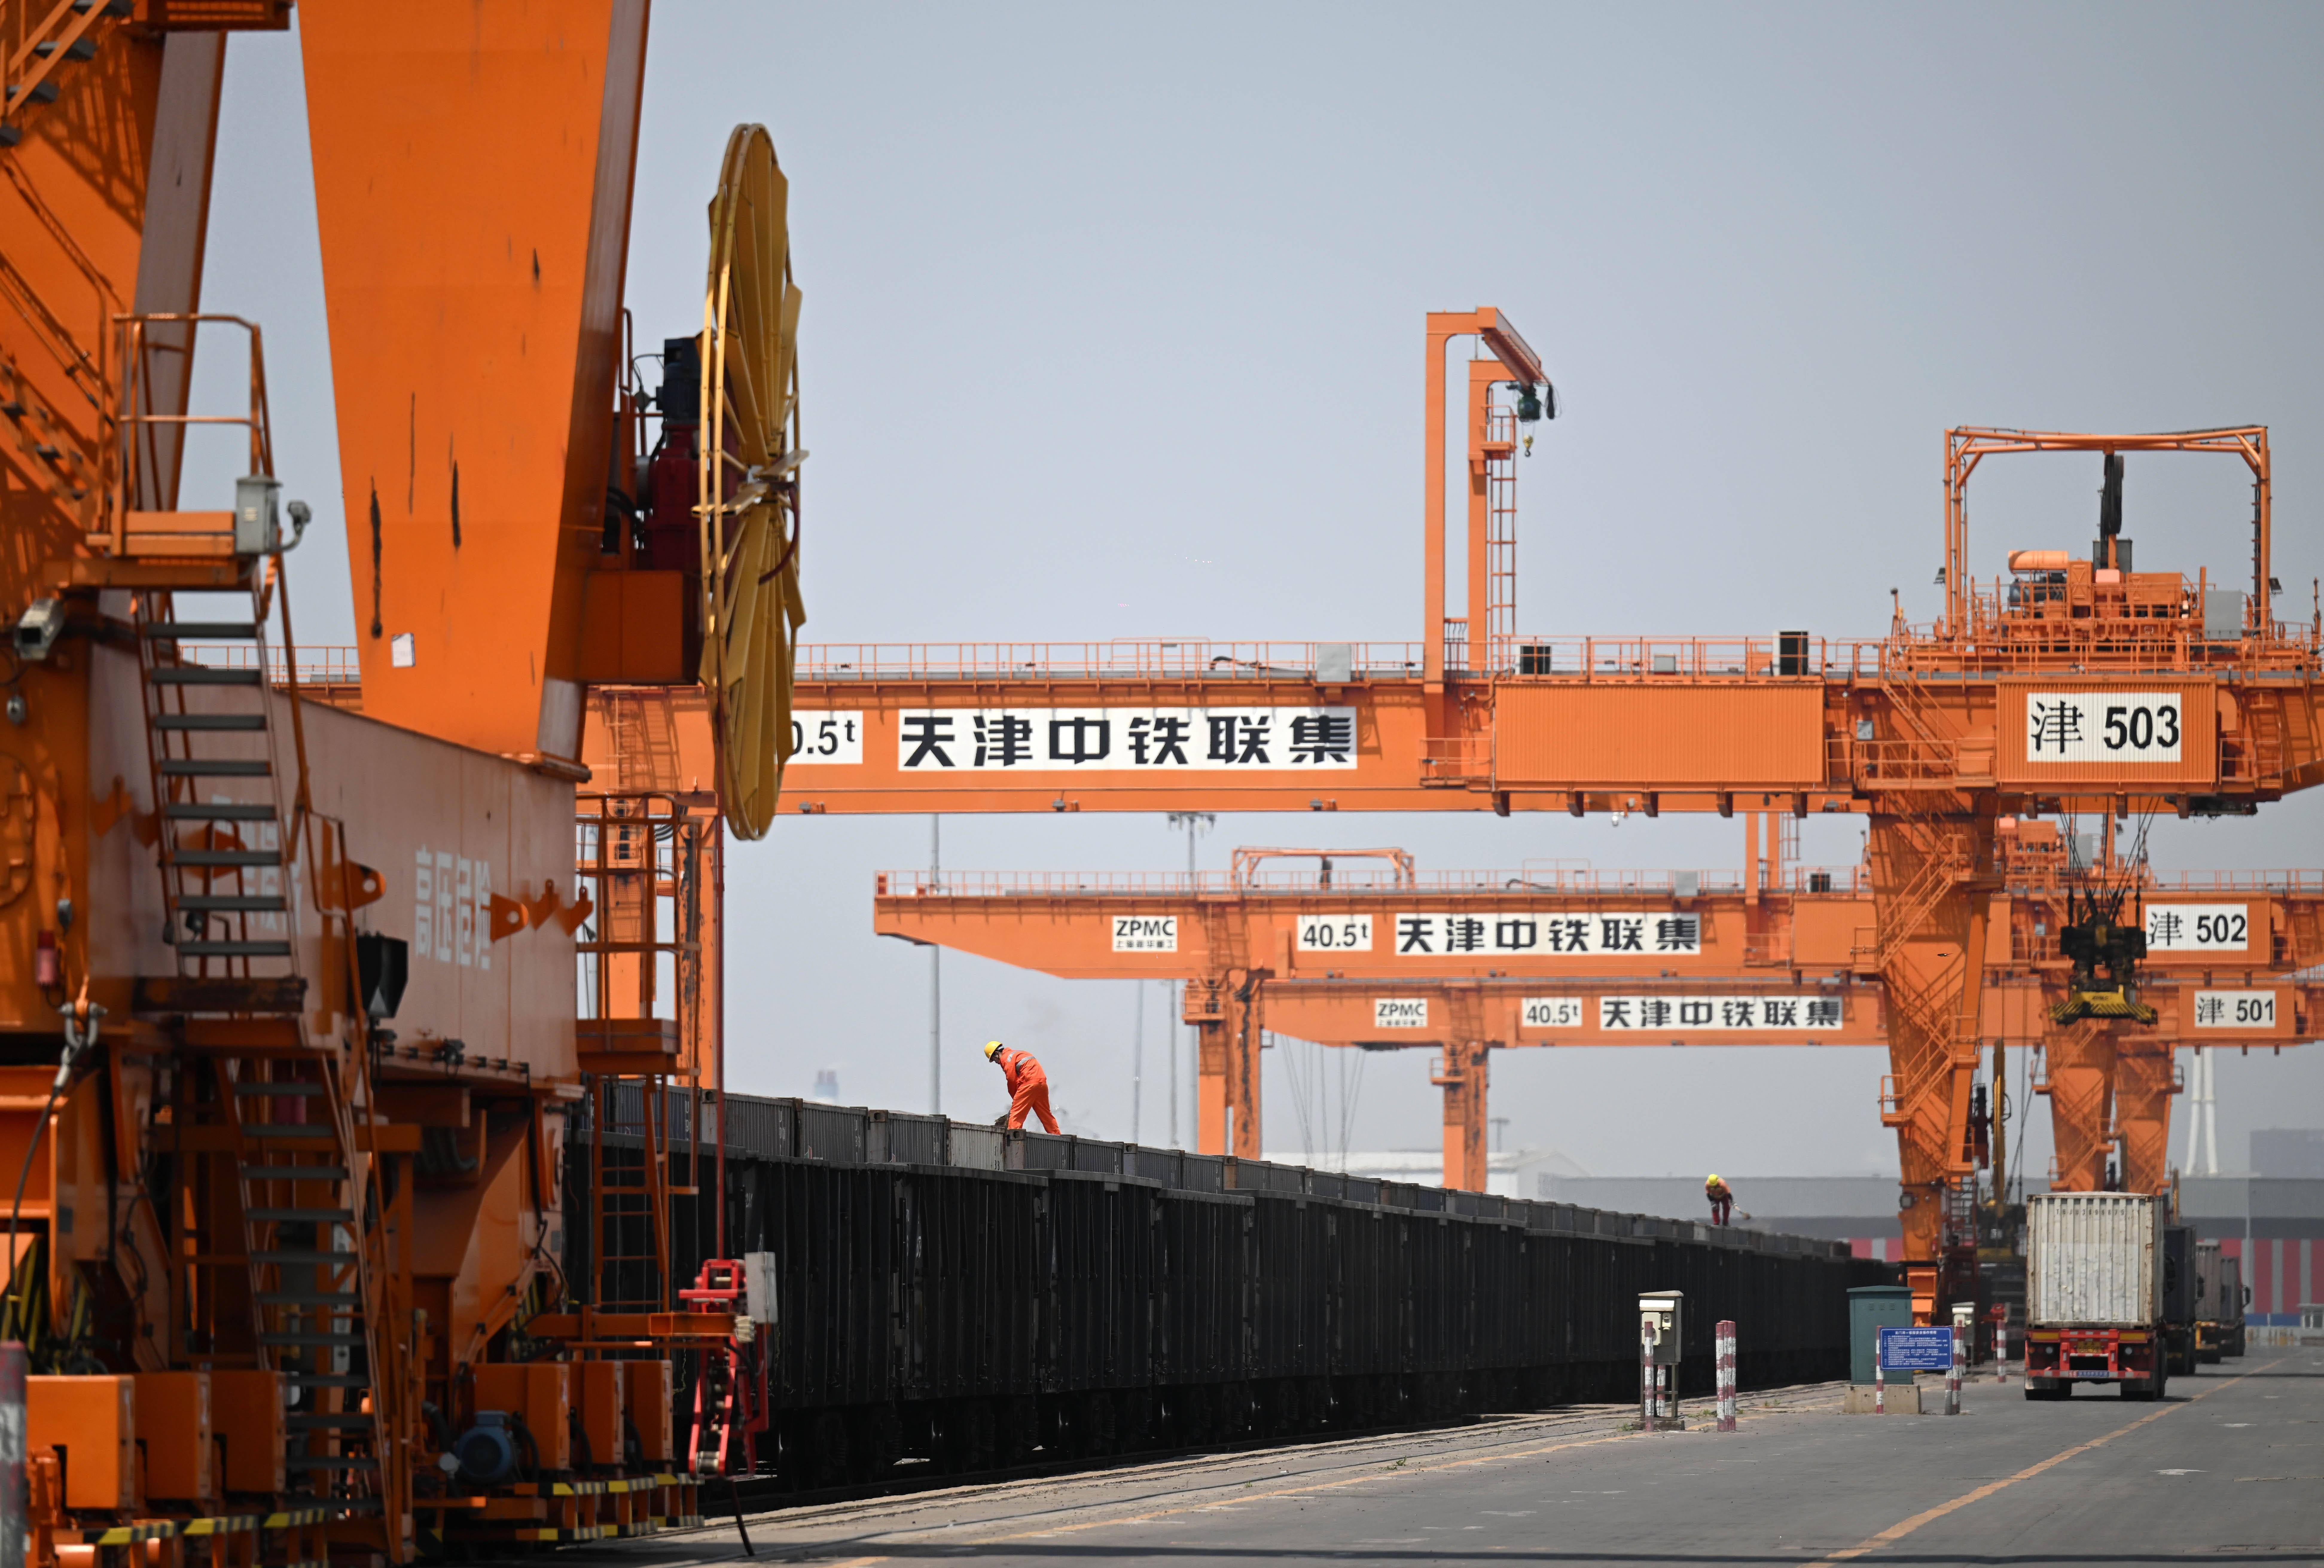 天津港:发挥枢纽优势 打造海铁联运快速路